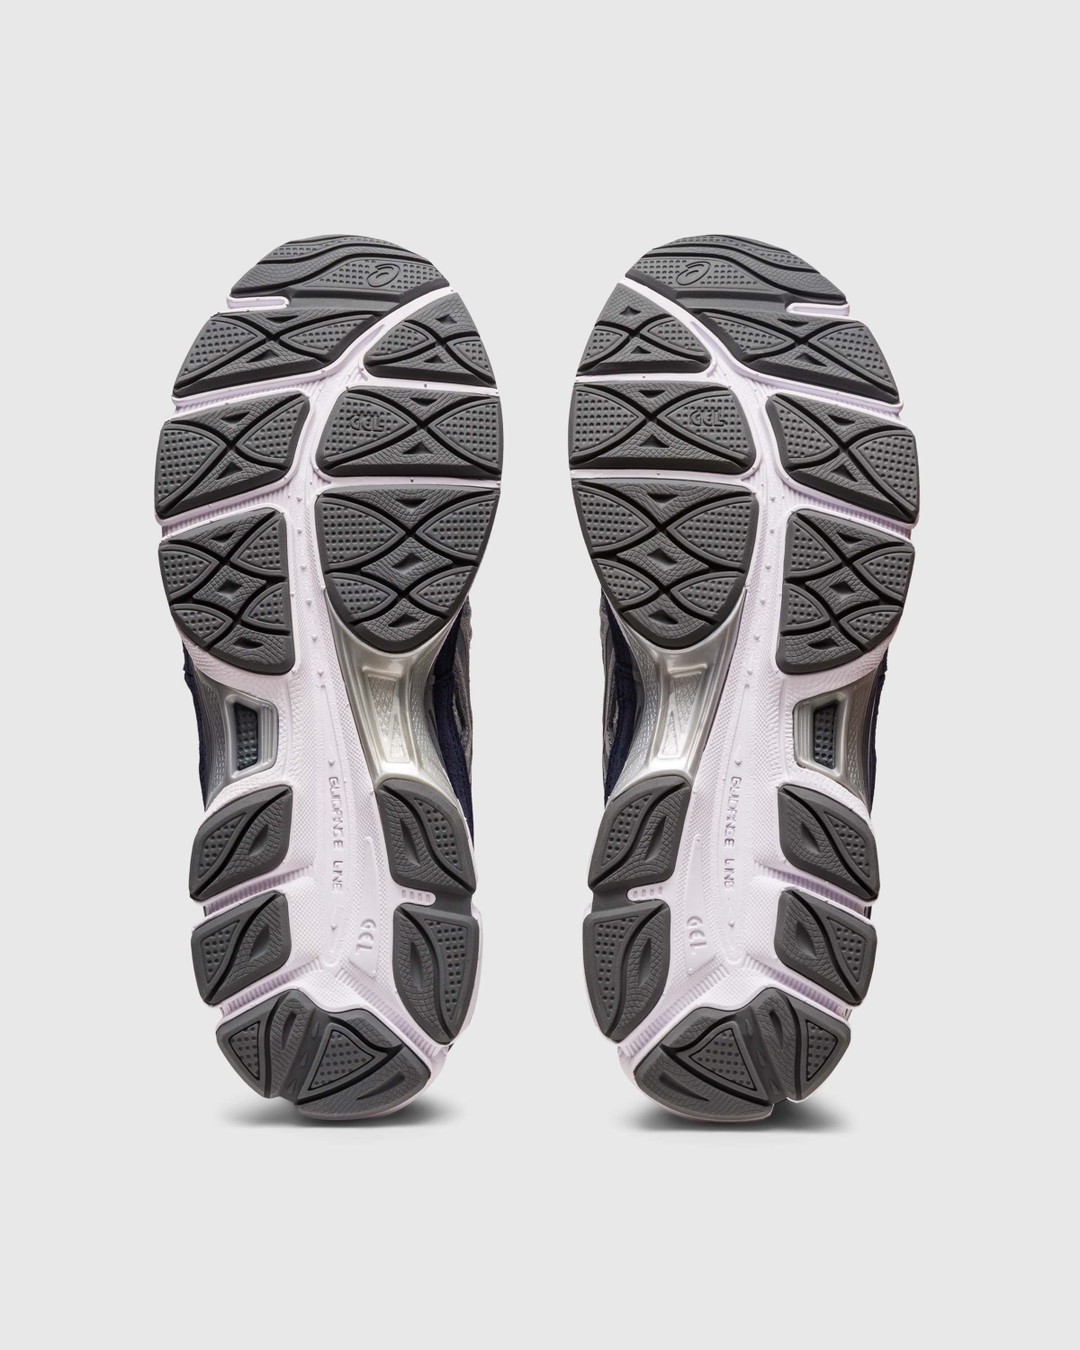 asics – GEL-NYC Cream/Steel Grey - Low Top Sneakers - Grey - Image 6